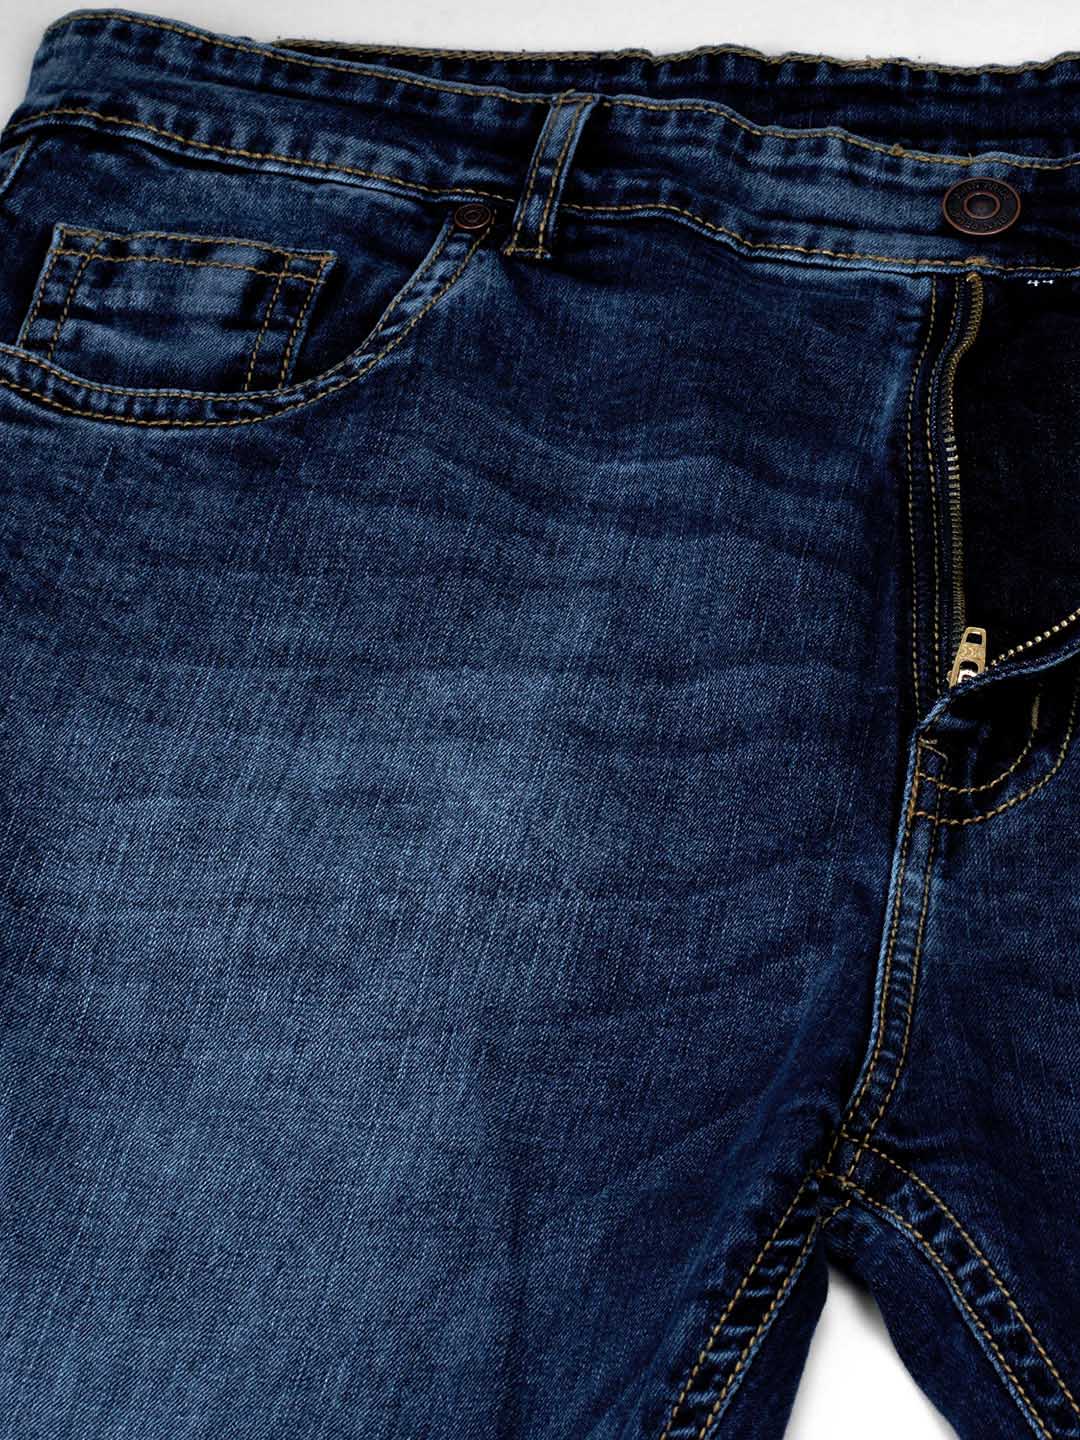 bottomwear/jeans/JPJ12111/jpj12111-2.jpg